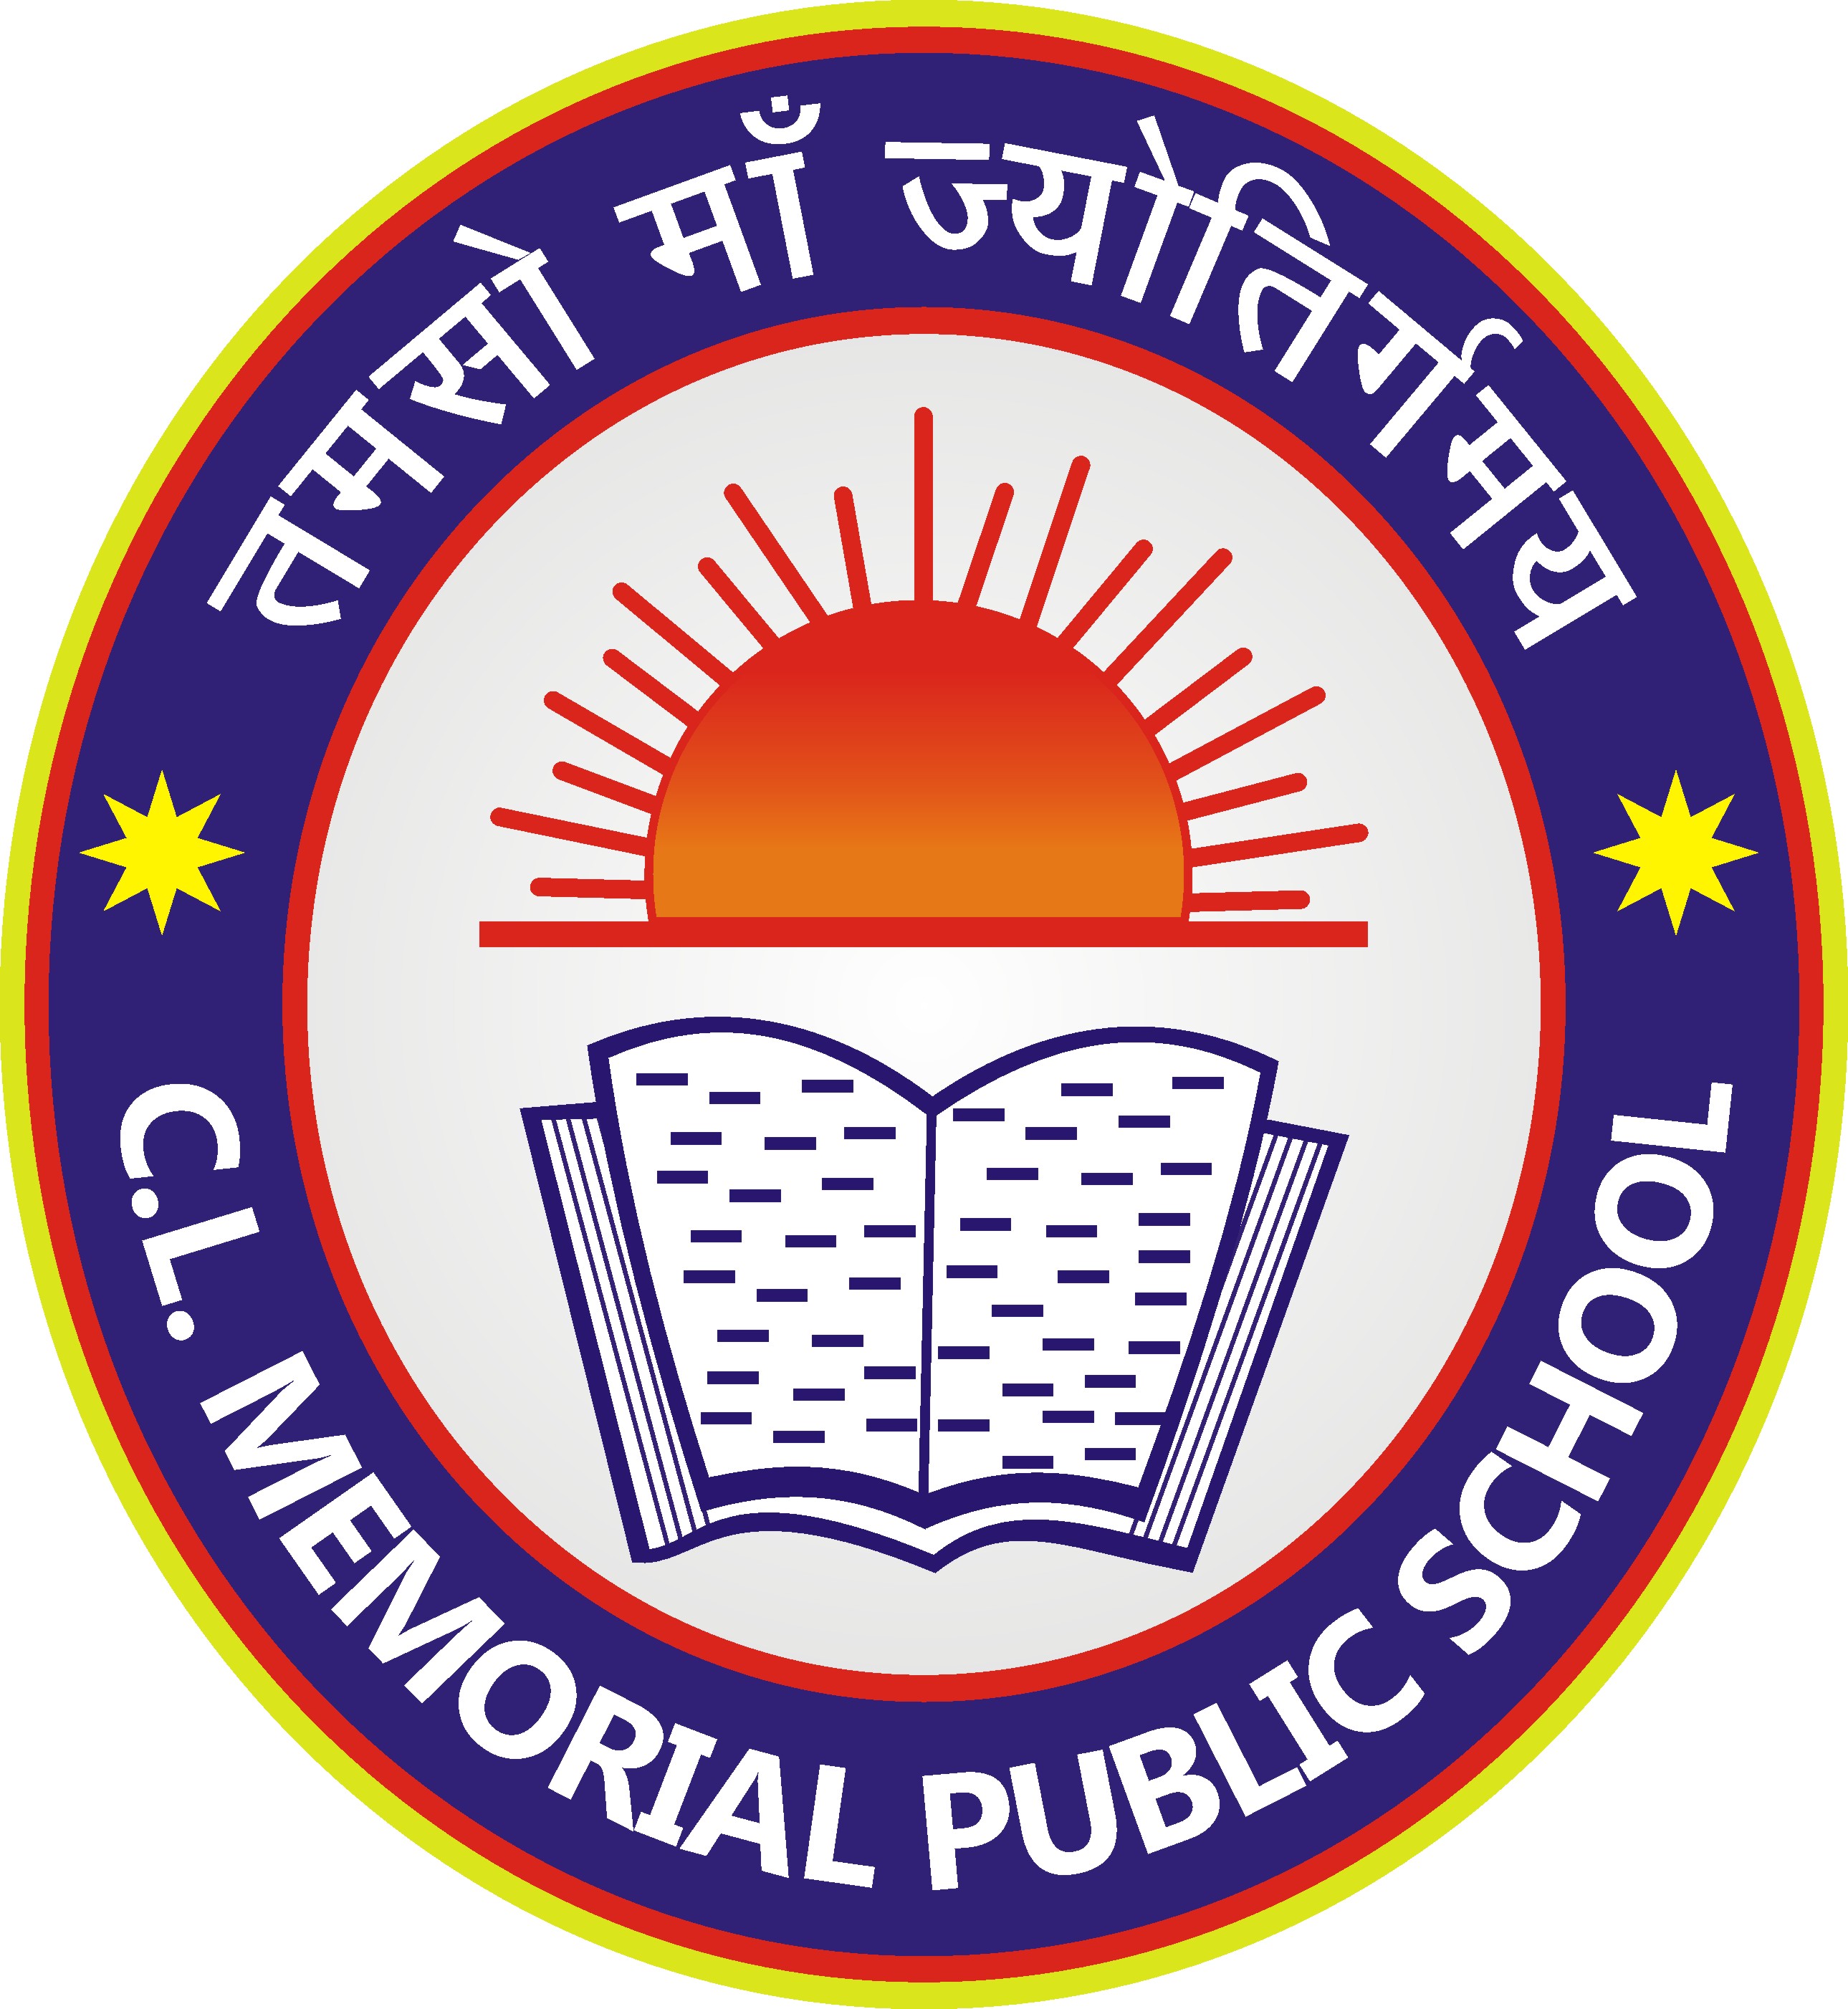 C L Memorial Public School Jhansi Logo 